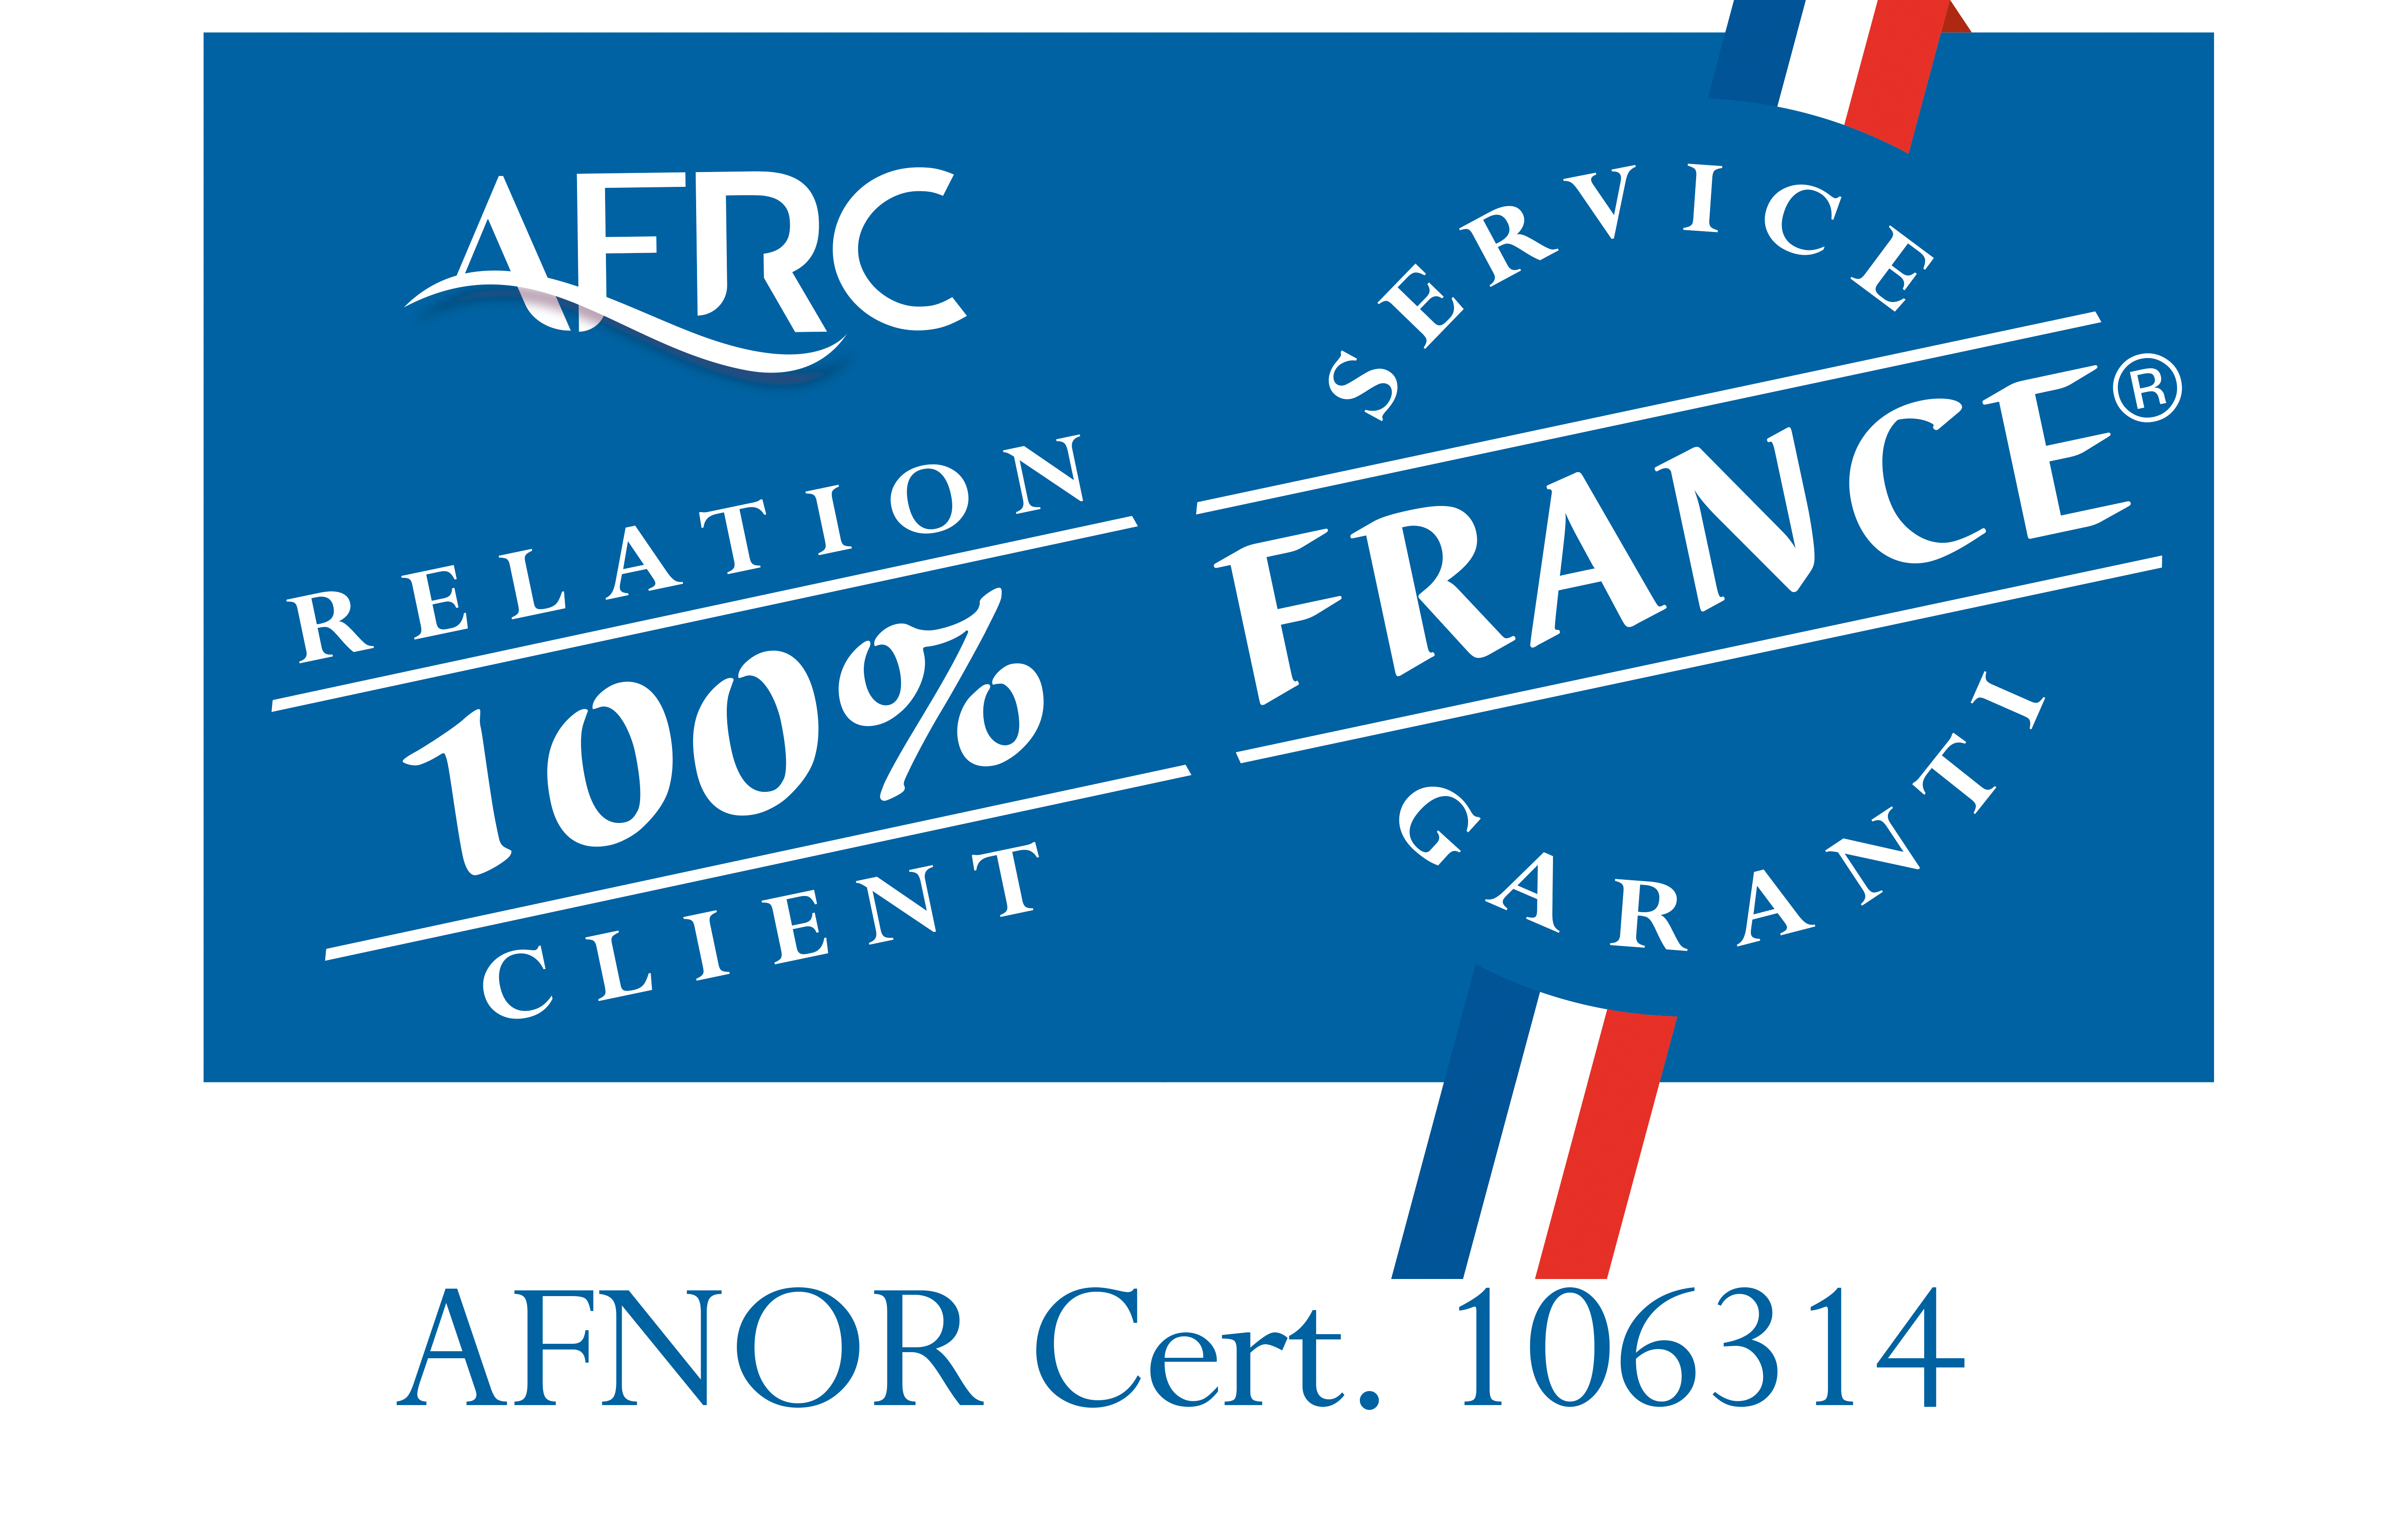 L'Excellence en Relation Client 100% France d’Indépendance Royale récompensée par l'AFRC